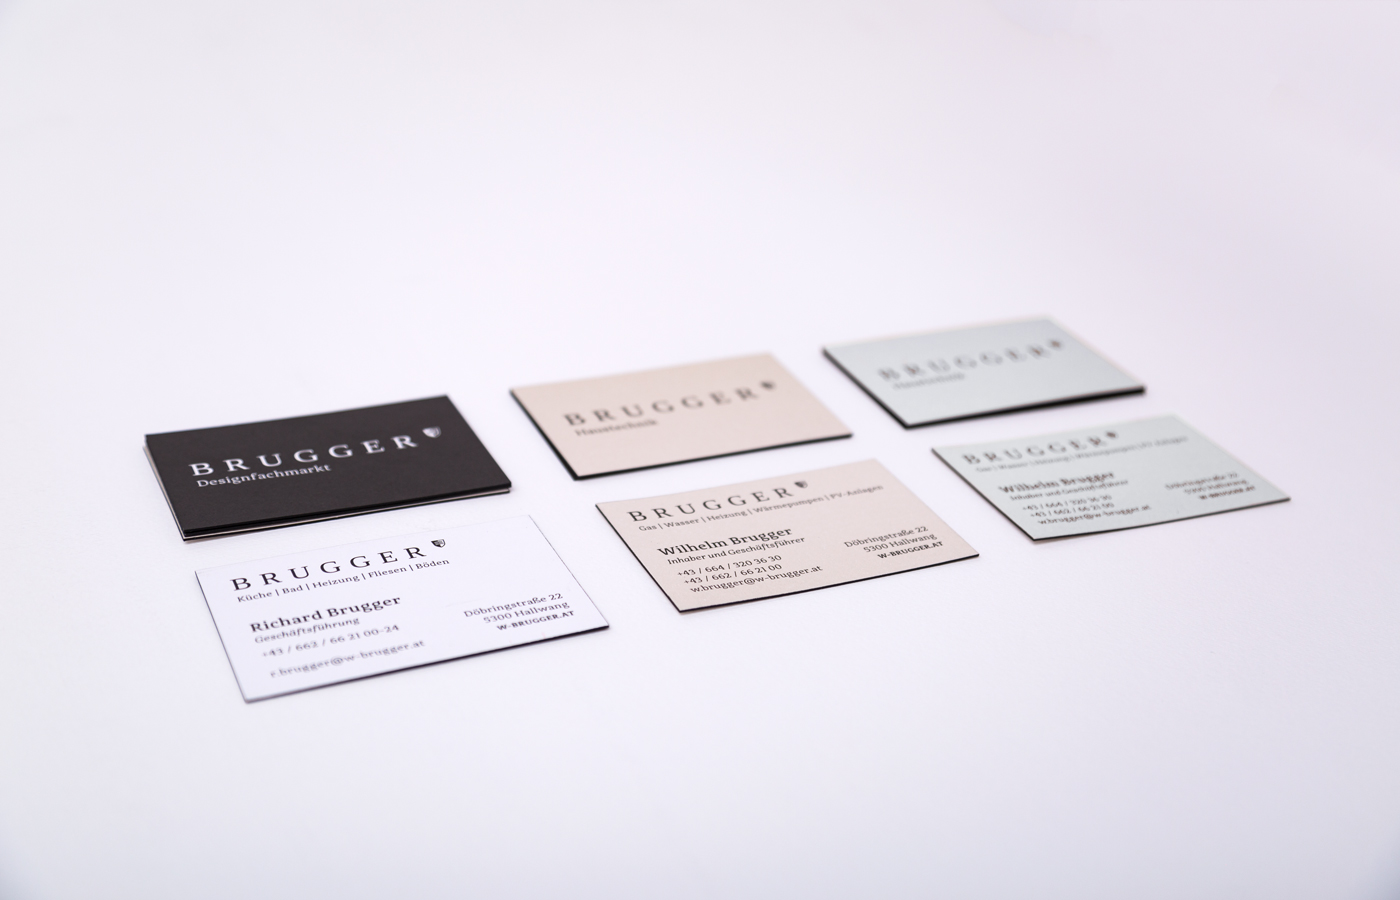 Die Visitenkarte auf Volumenpapier mit schwarzem Farbschnitt gibts in 3 Versionen für die 3 Geschäftsbereiche von Brugger.